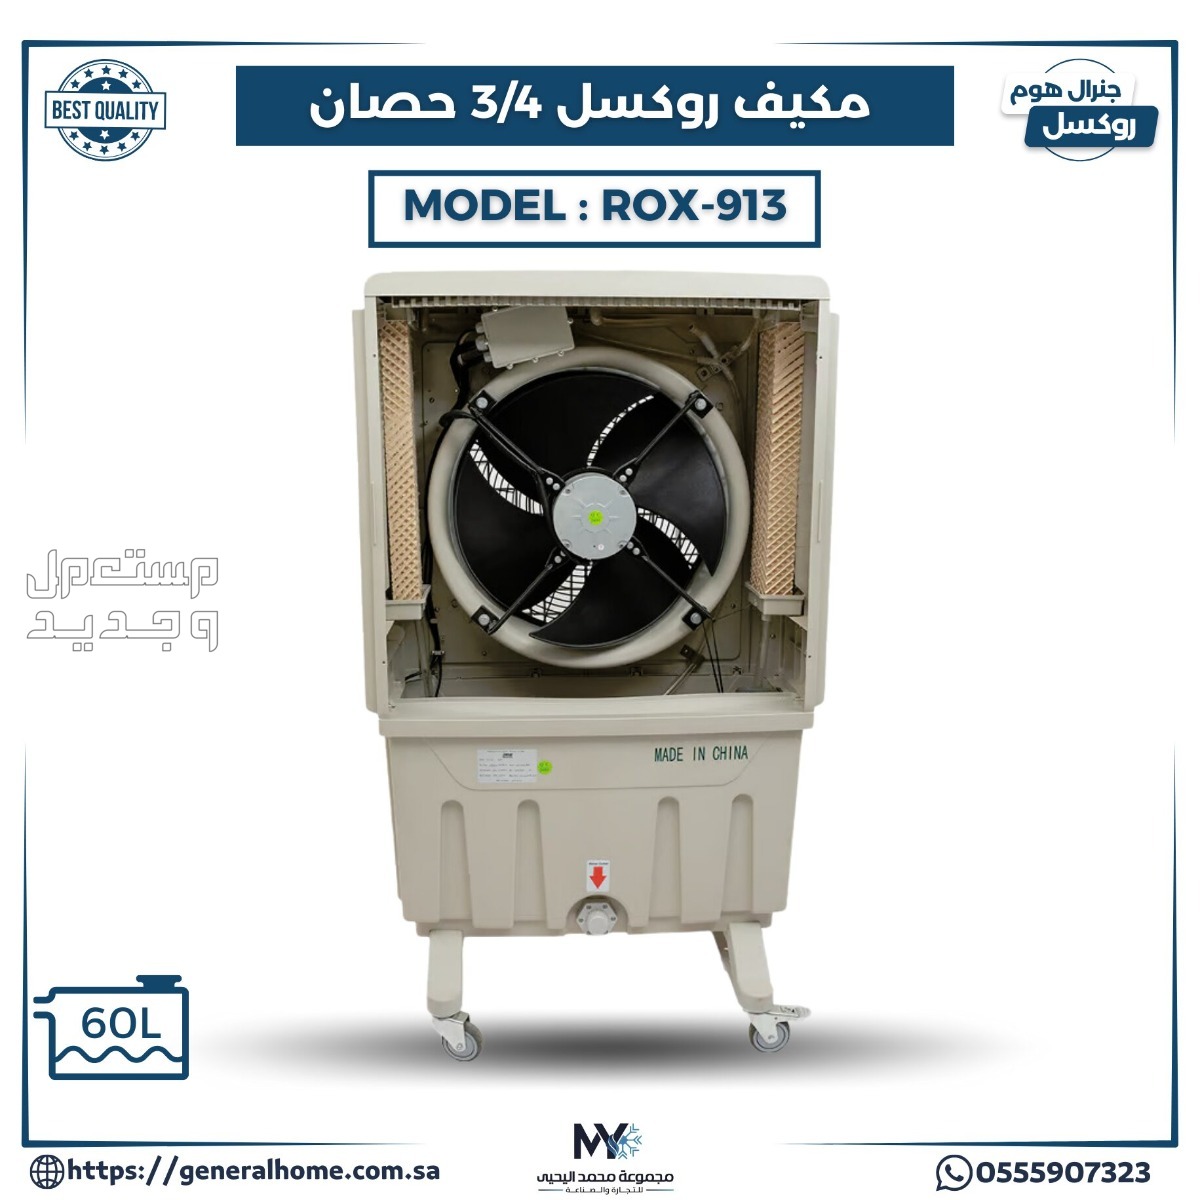 عروض اليحيى للمكيفات بالأنواع والمواصفات والصور والأسعار في مصر مكيف روكسل 3/4 حصان موديل ROX-913